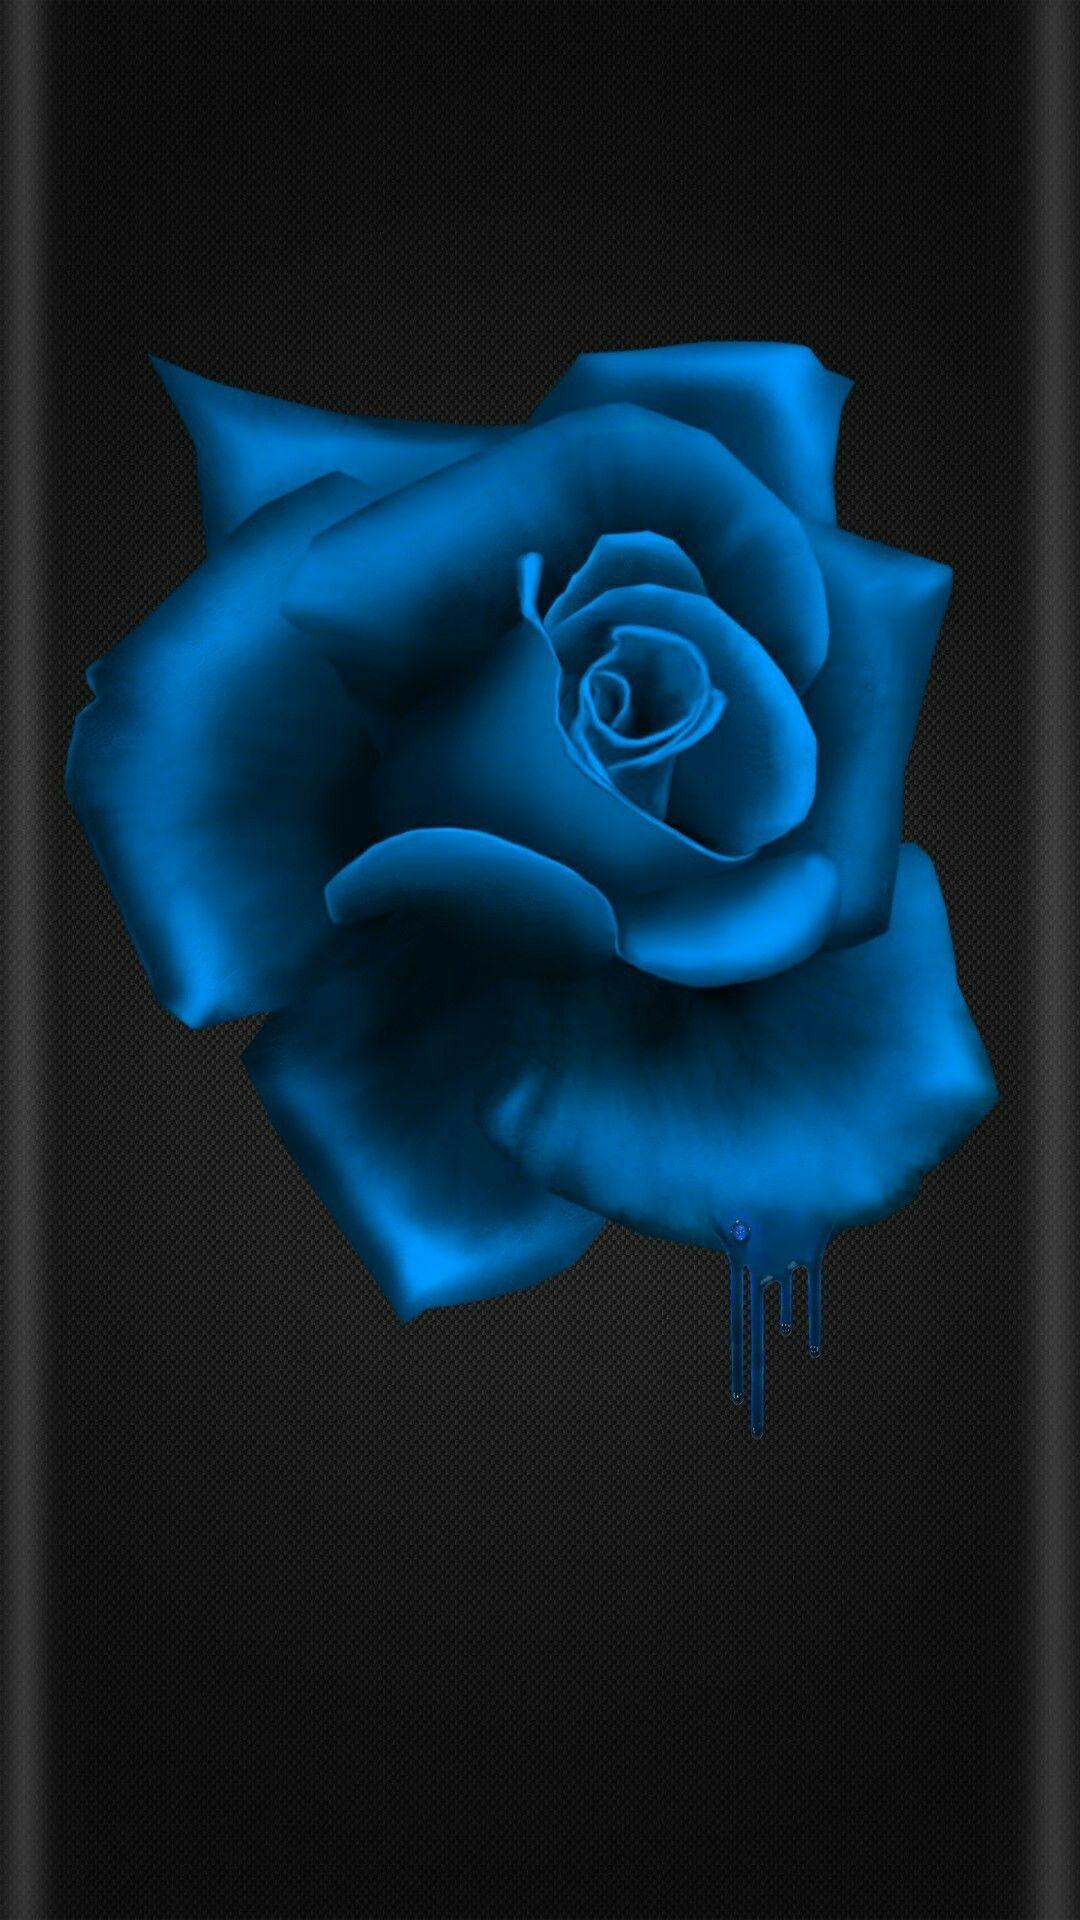 1080x1920 Đen và xanh hoa.  tình yêu bị ngăn cấm vào năm 2019. Hoa hồng xanh